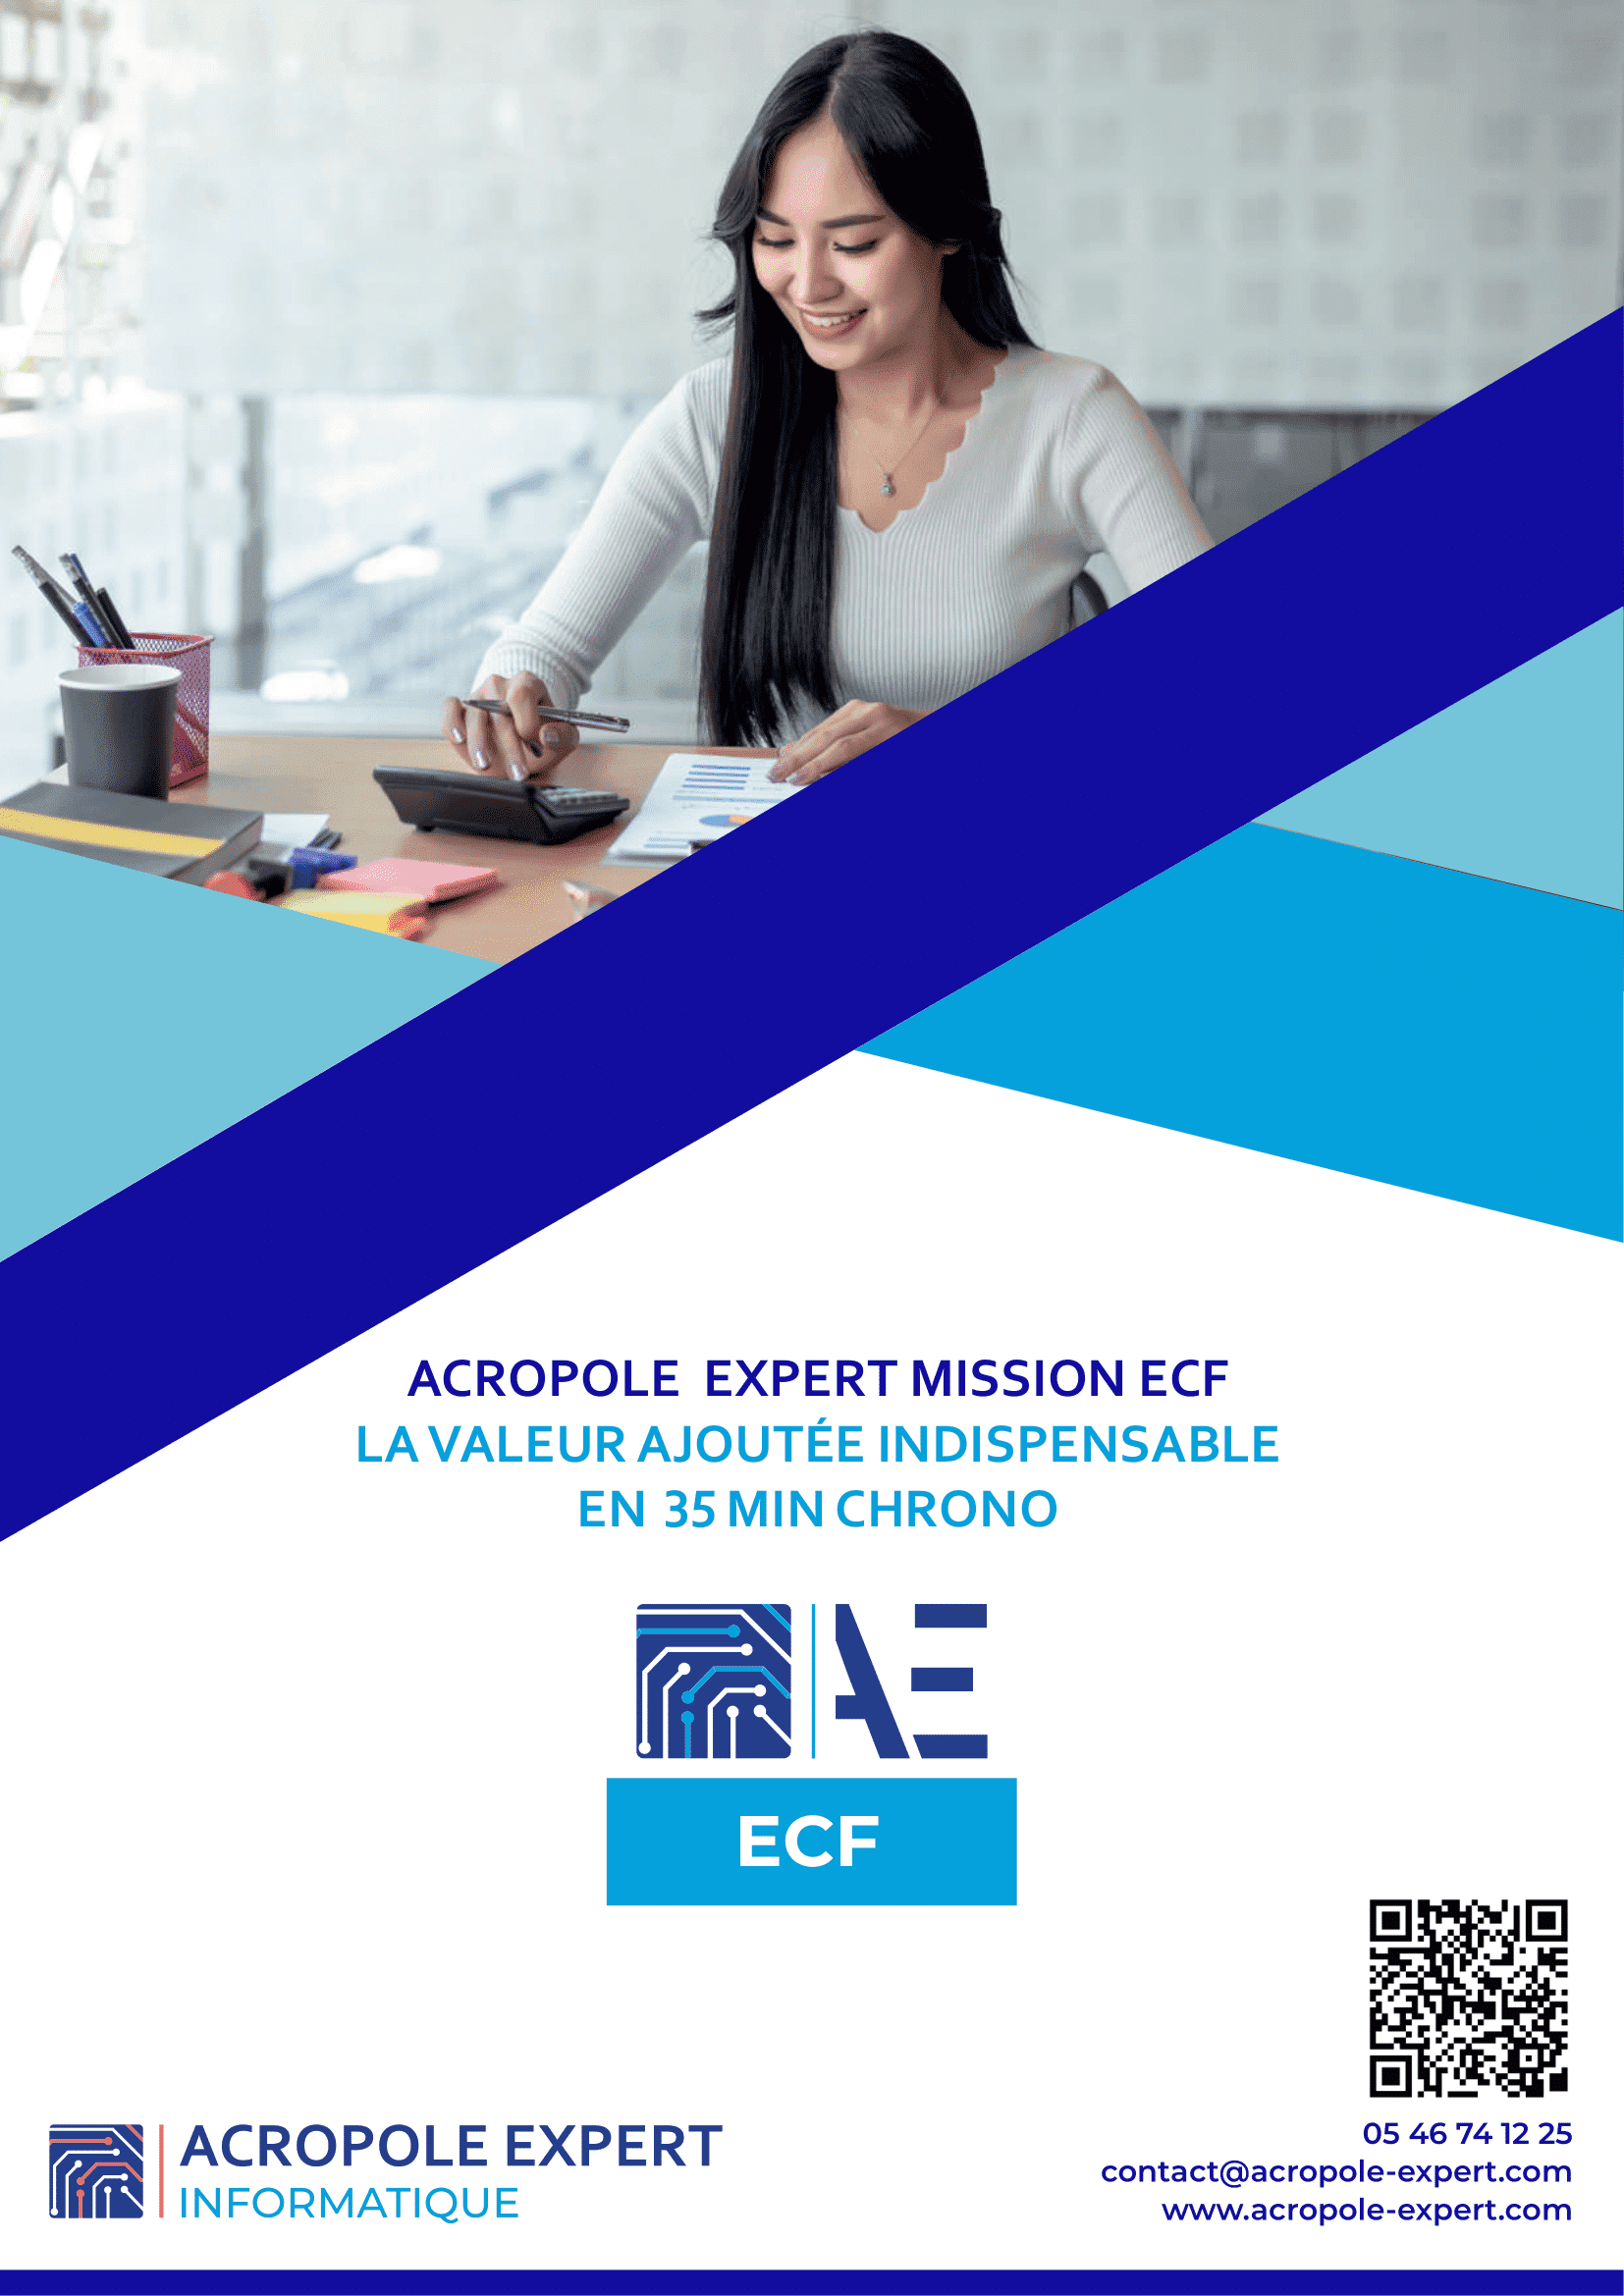 Acropole Expert ECF - Plaquette Acropole Expert ECF - Page 1